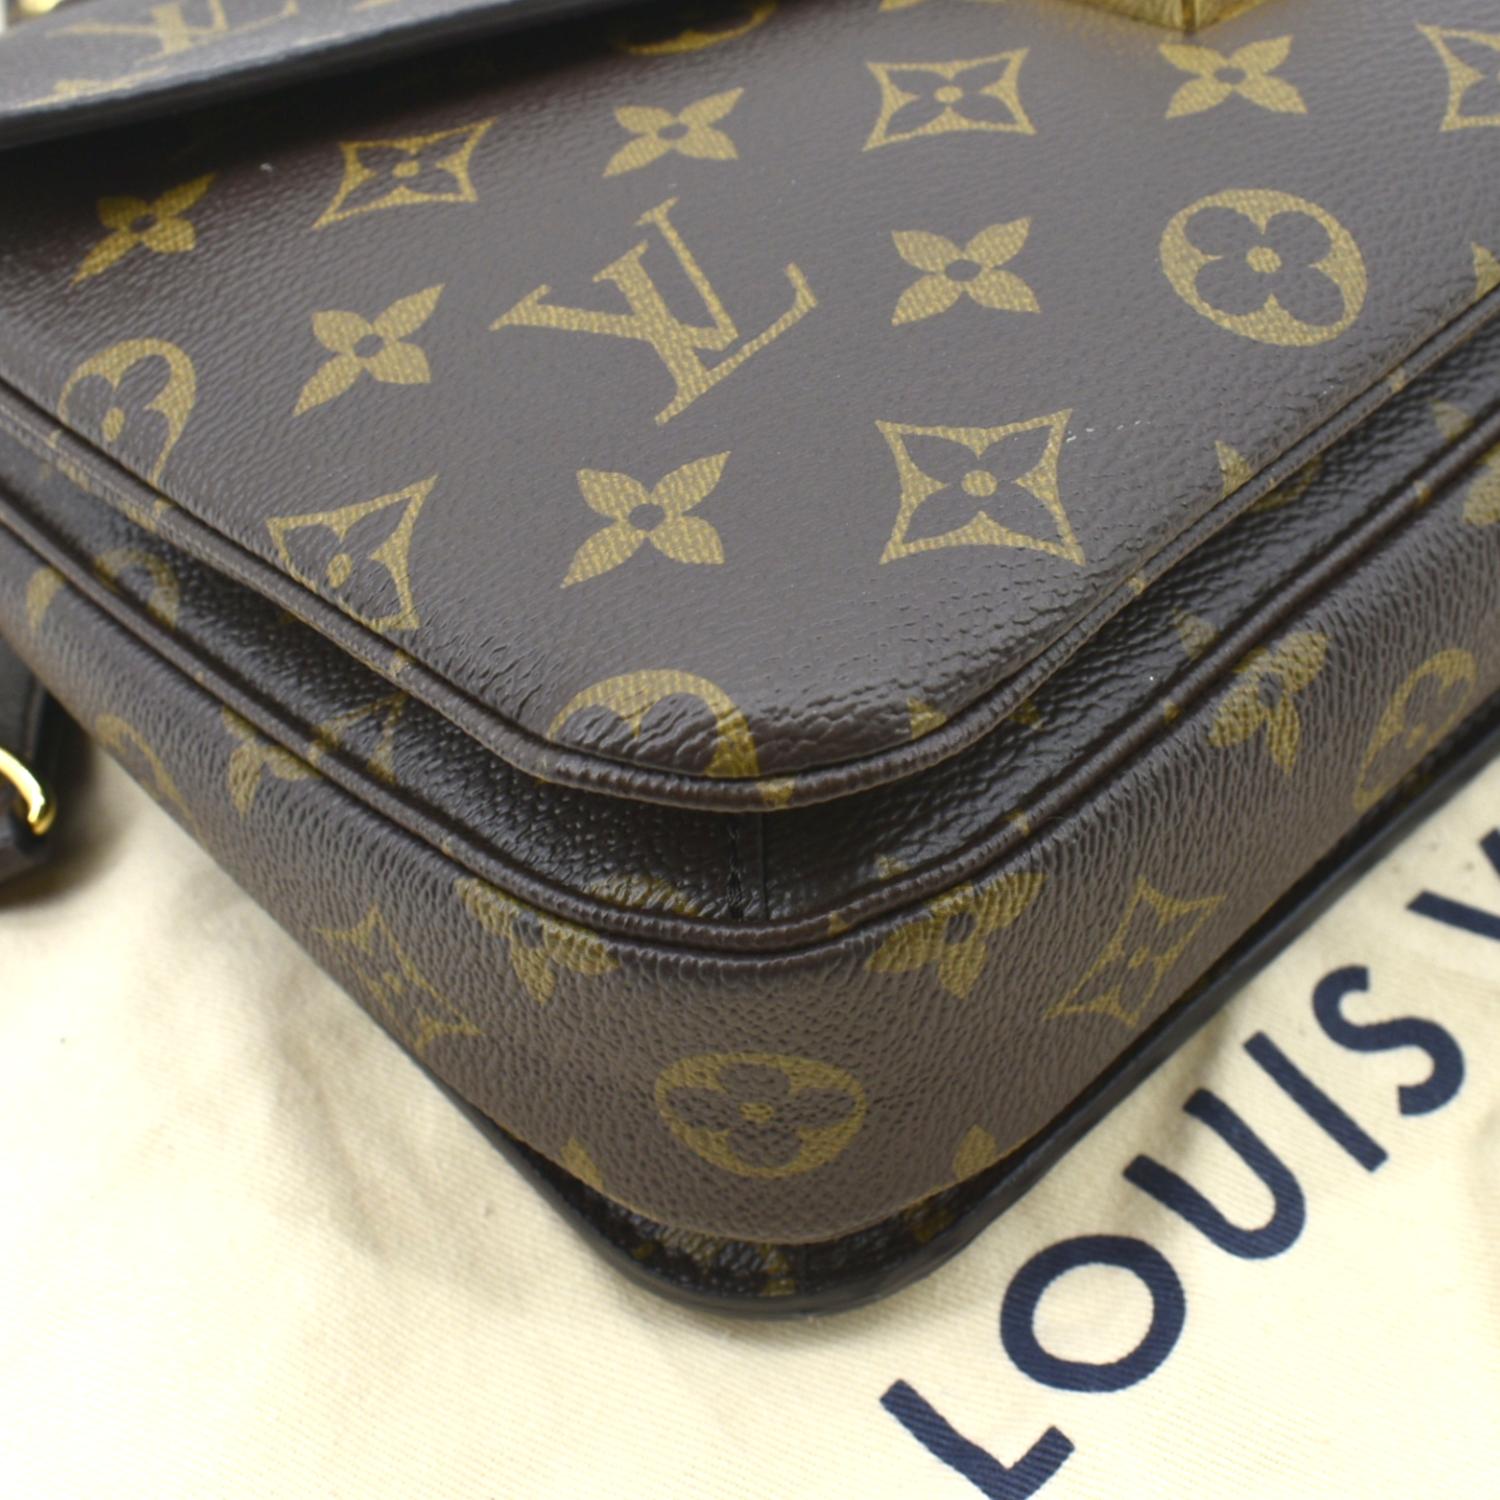 Louis+Vuitton+Pochette+M%C3%A9tis+Shoulder+Bag+Brown+Canvas for sale online